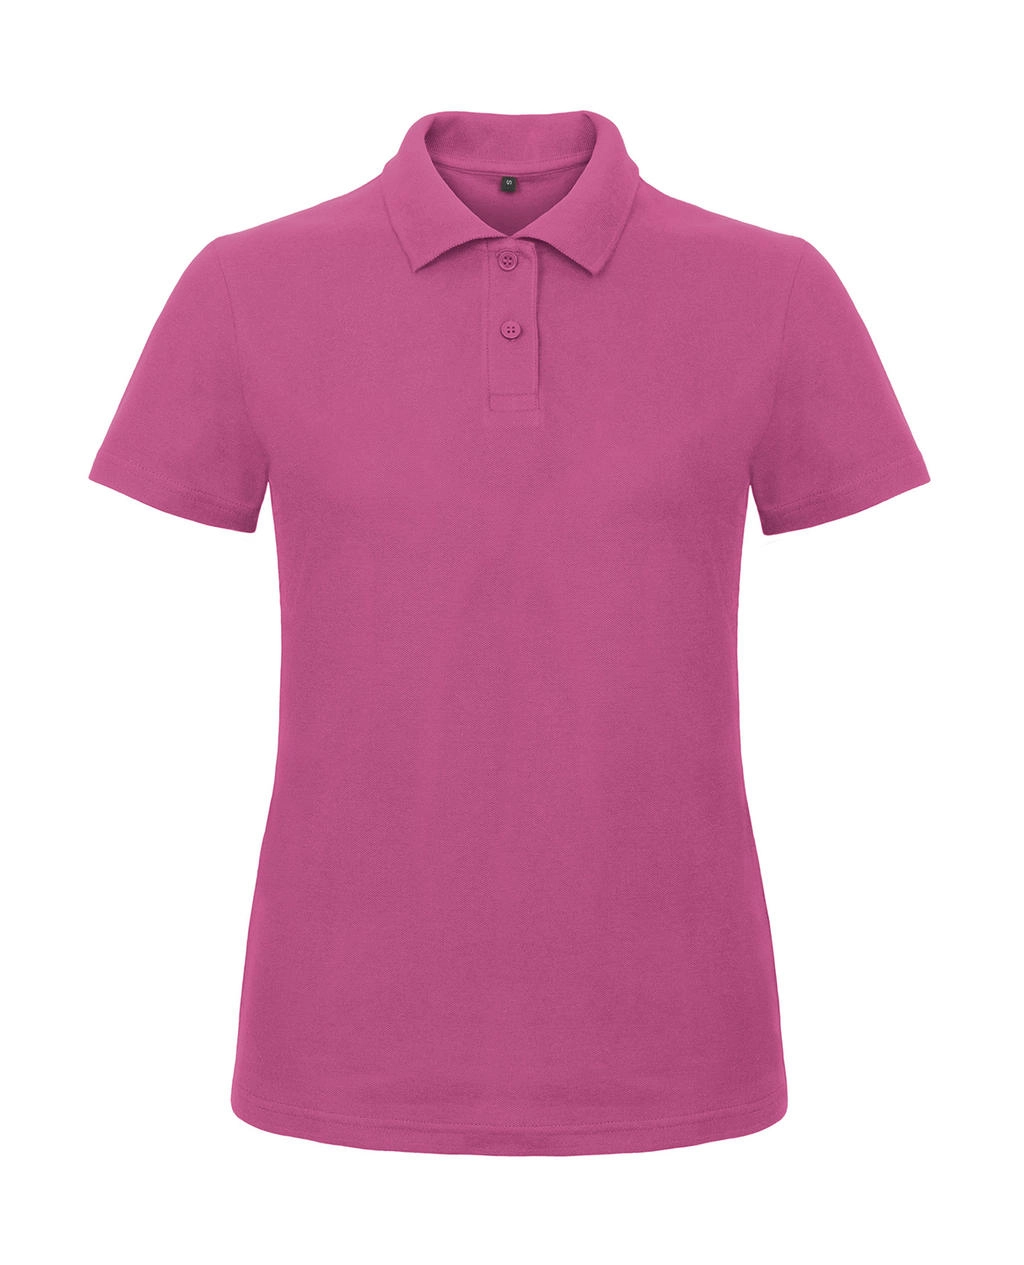 ID.001/women Piqué Polo Shirt zum Besticken und Bedrucken in der Farbe Fuchsia mit Ihren Logo, Schriftzug oder Motiv.